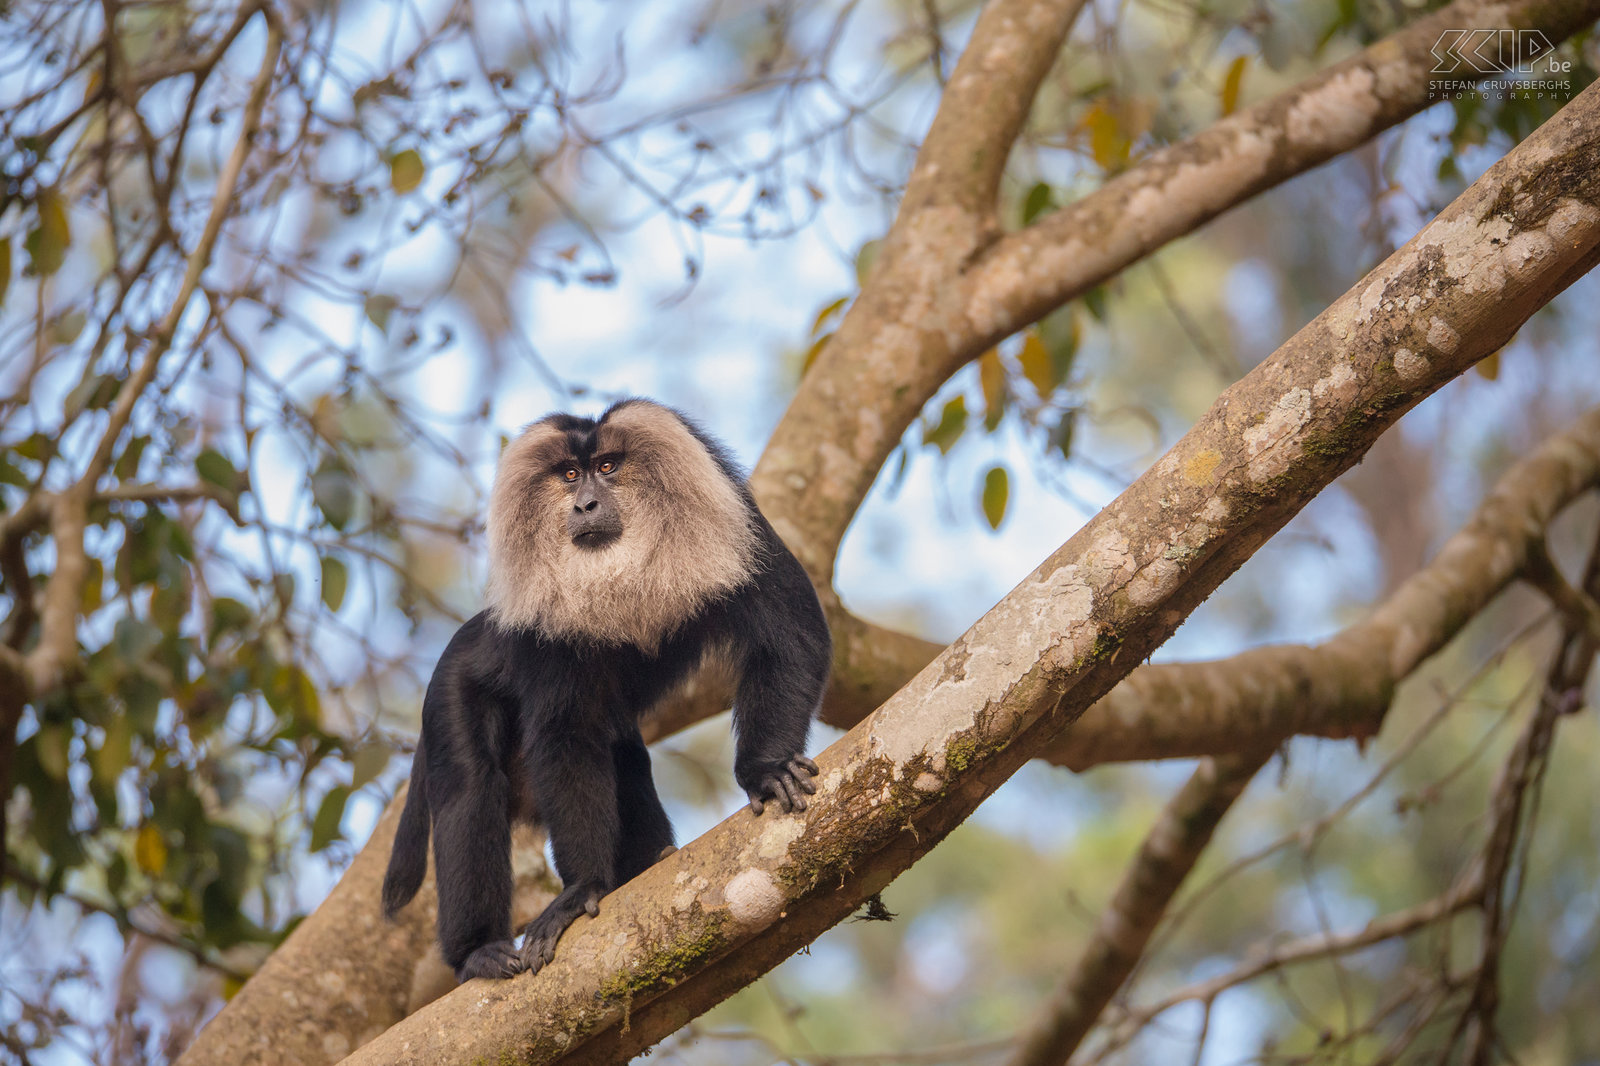 Valparai - Wanderoe De wanderoe, baardaap of leeuwenstaartmakaak (Lion-tailed macaque, Macaca silenus) is een bedreigde apensoort die je nog kan terugvinden in de bossen van de theeplantages in Valparai. Stefan Cruysberghs